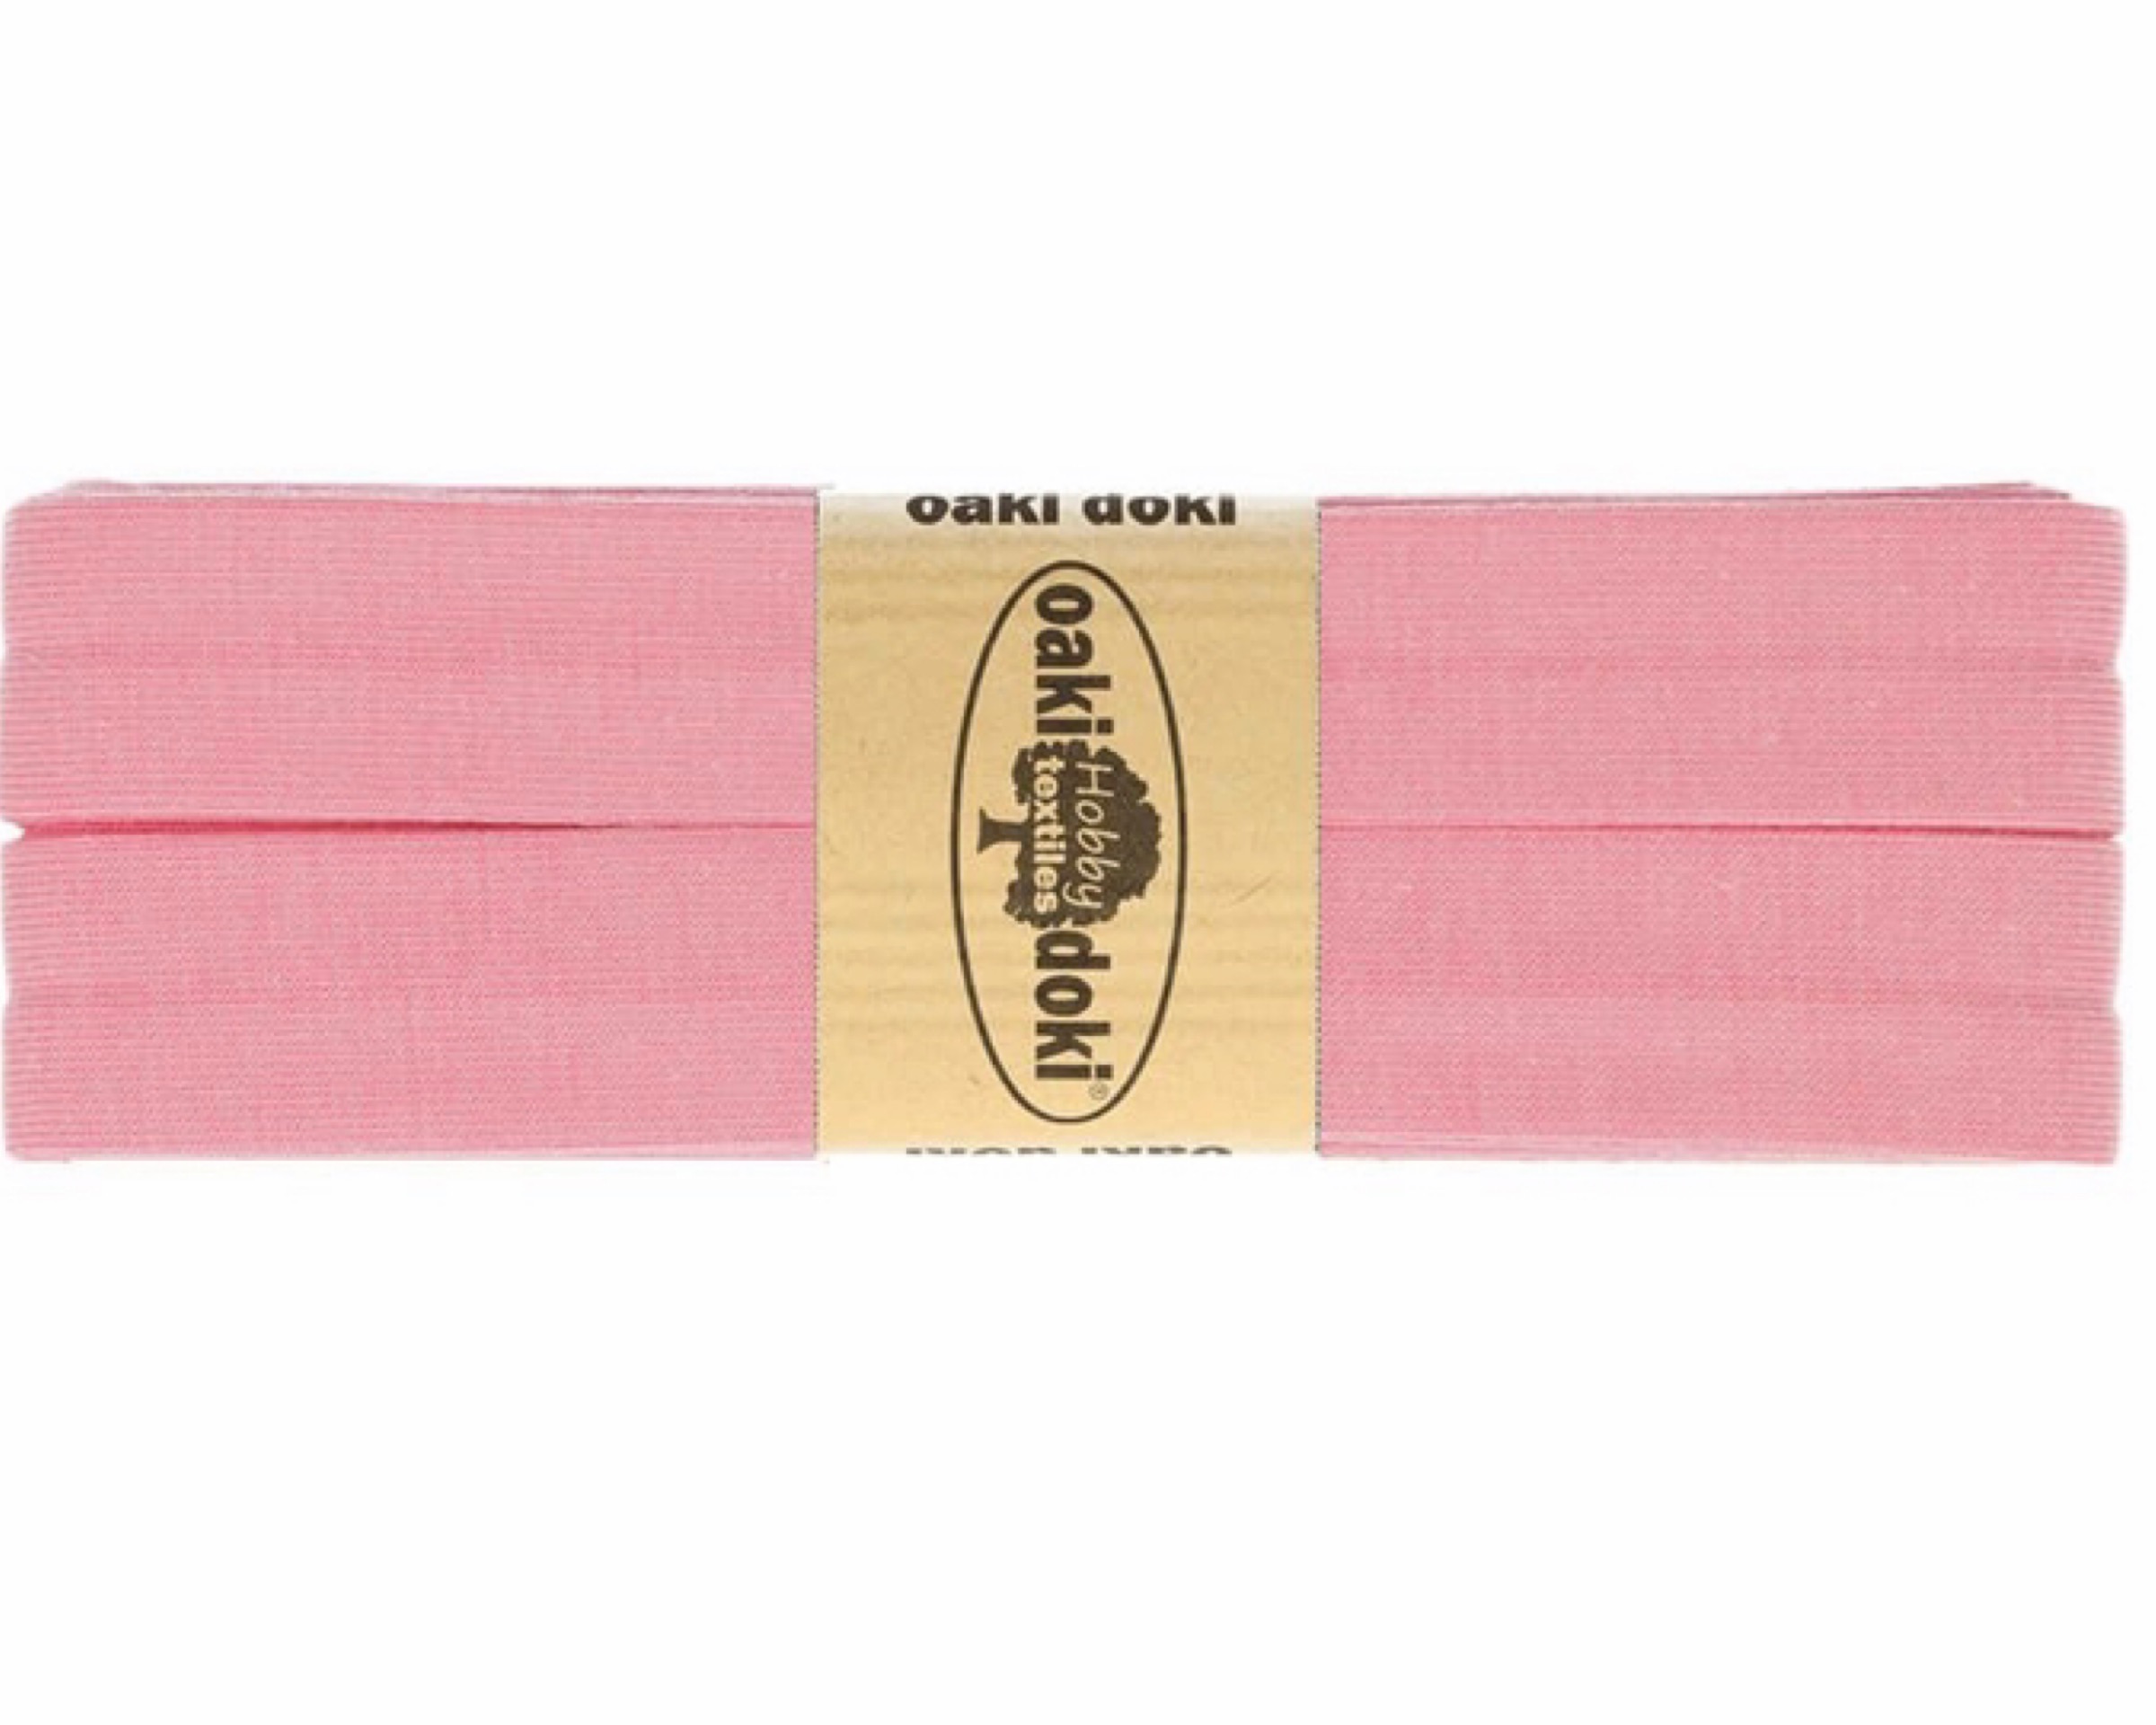 Biaisband tricot de luxe 20 mm 3m – Nr.017 apricot roze